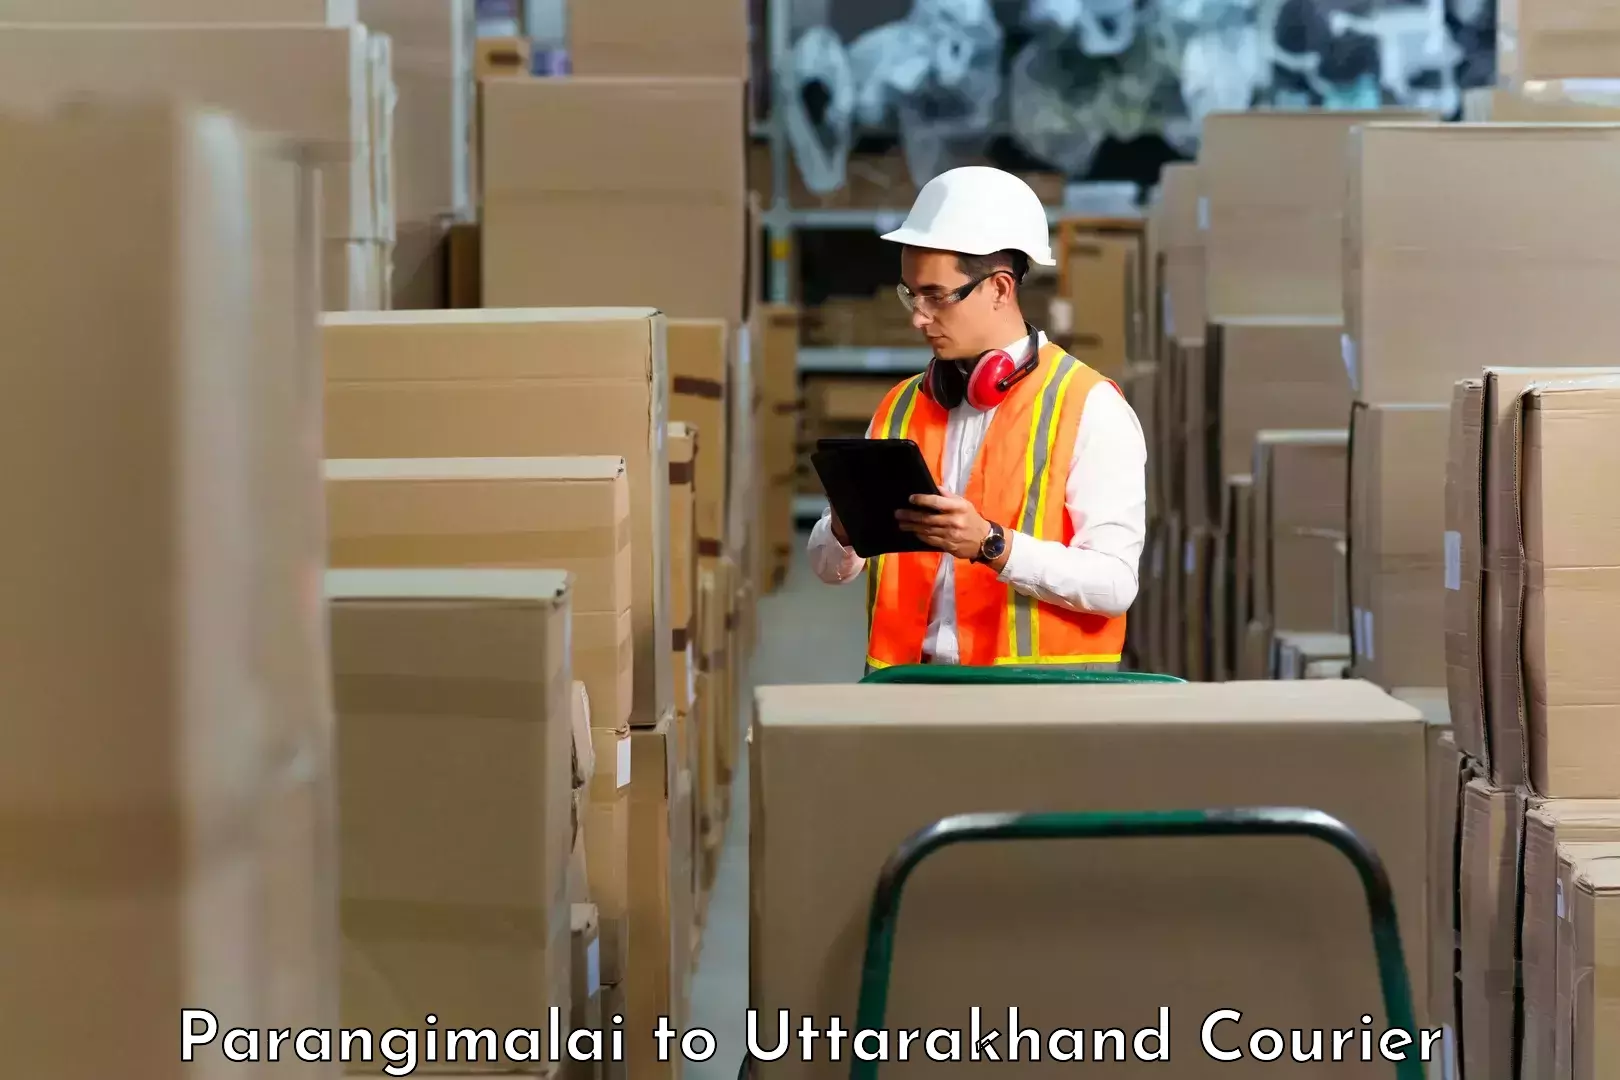 Cash on delivery service Parangimalai to Uttarkashi